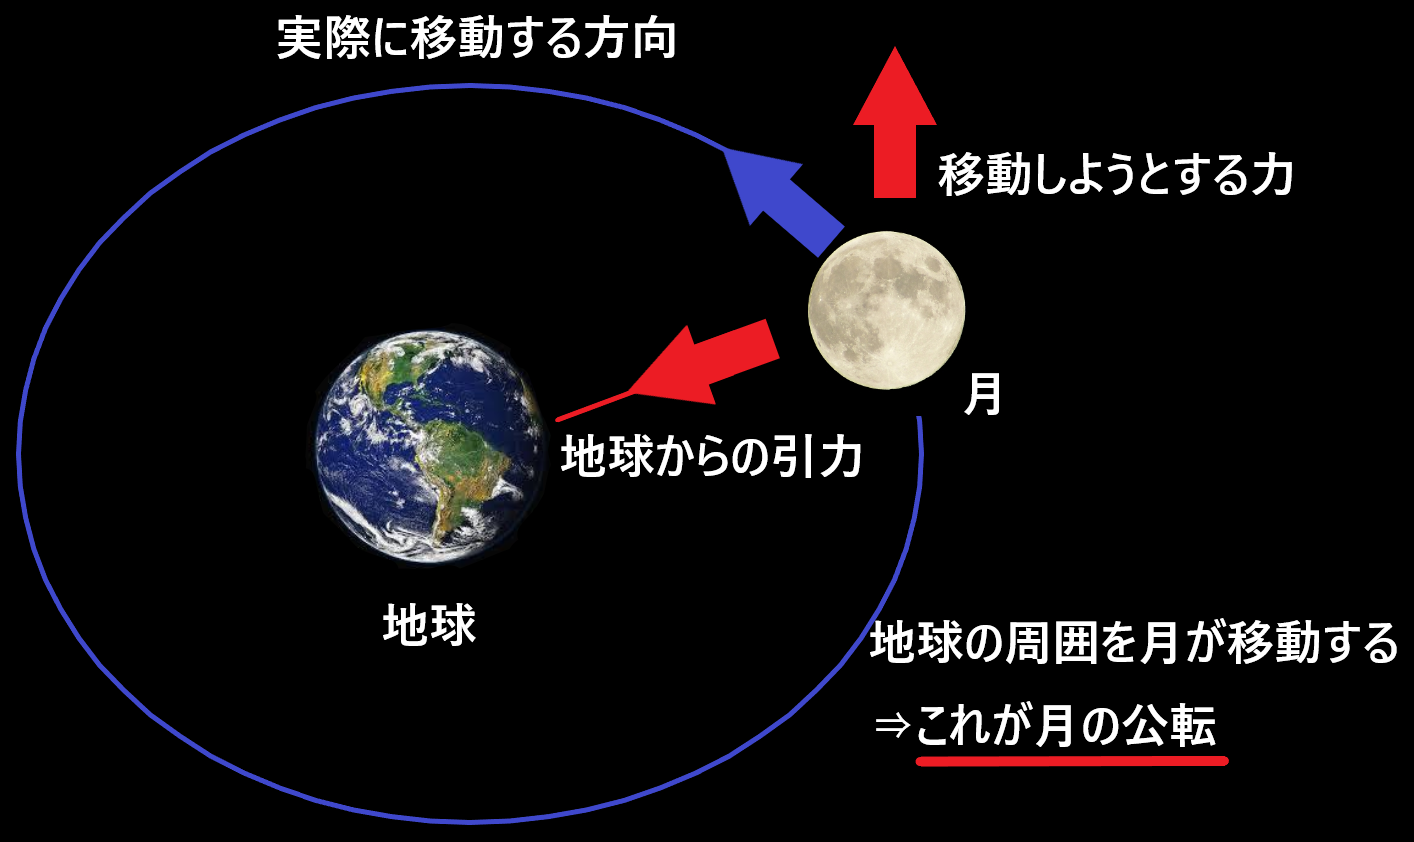 なぜ太陽と月は地球とぶつからないのか 仕組みを簡単に図で解説